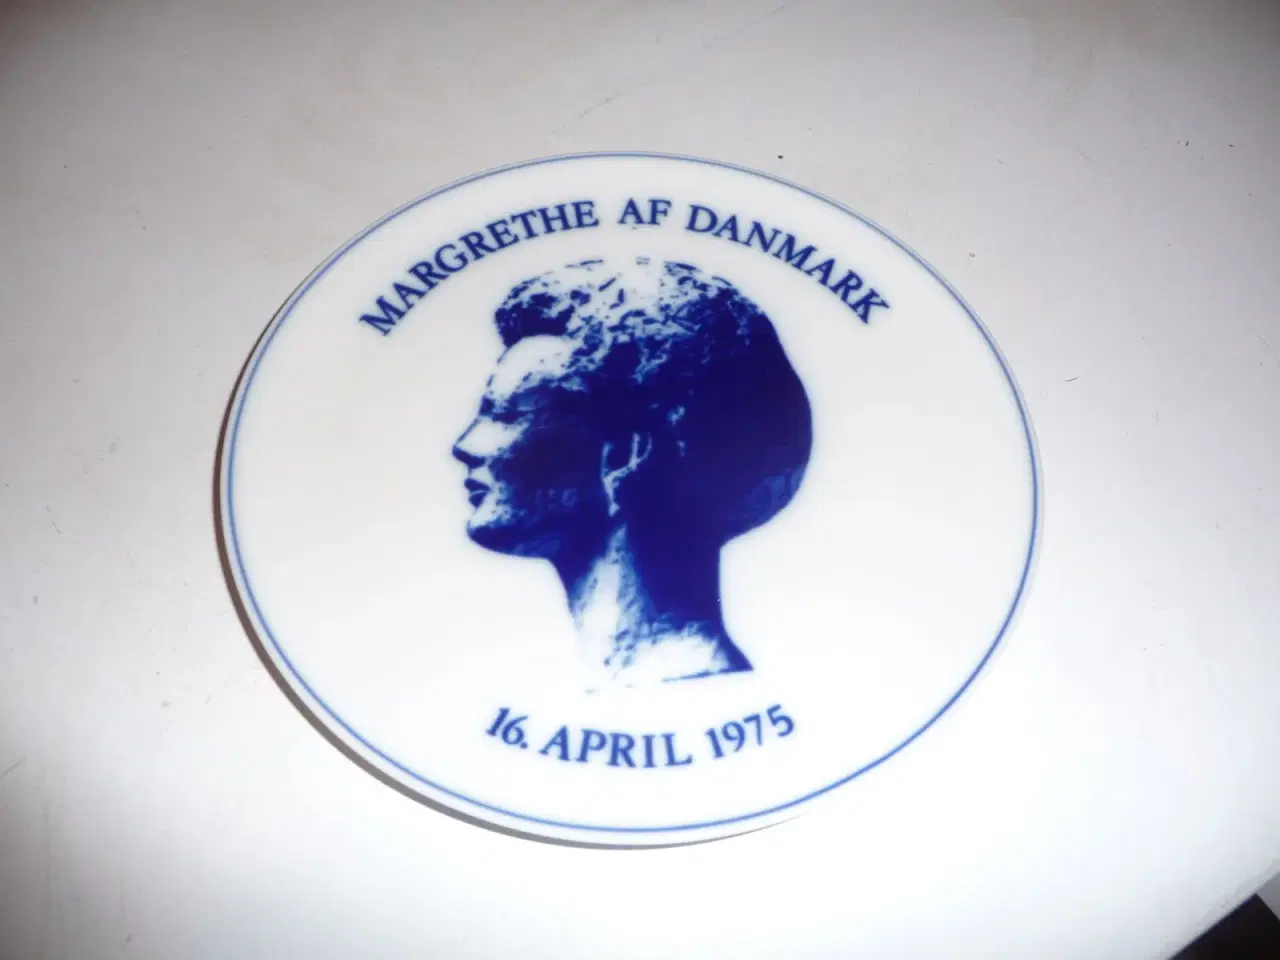 Billede 1 - Margrethe af Danmark, 16 April 1975